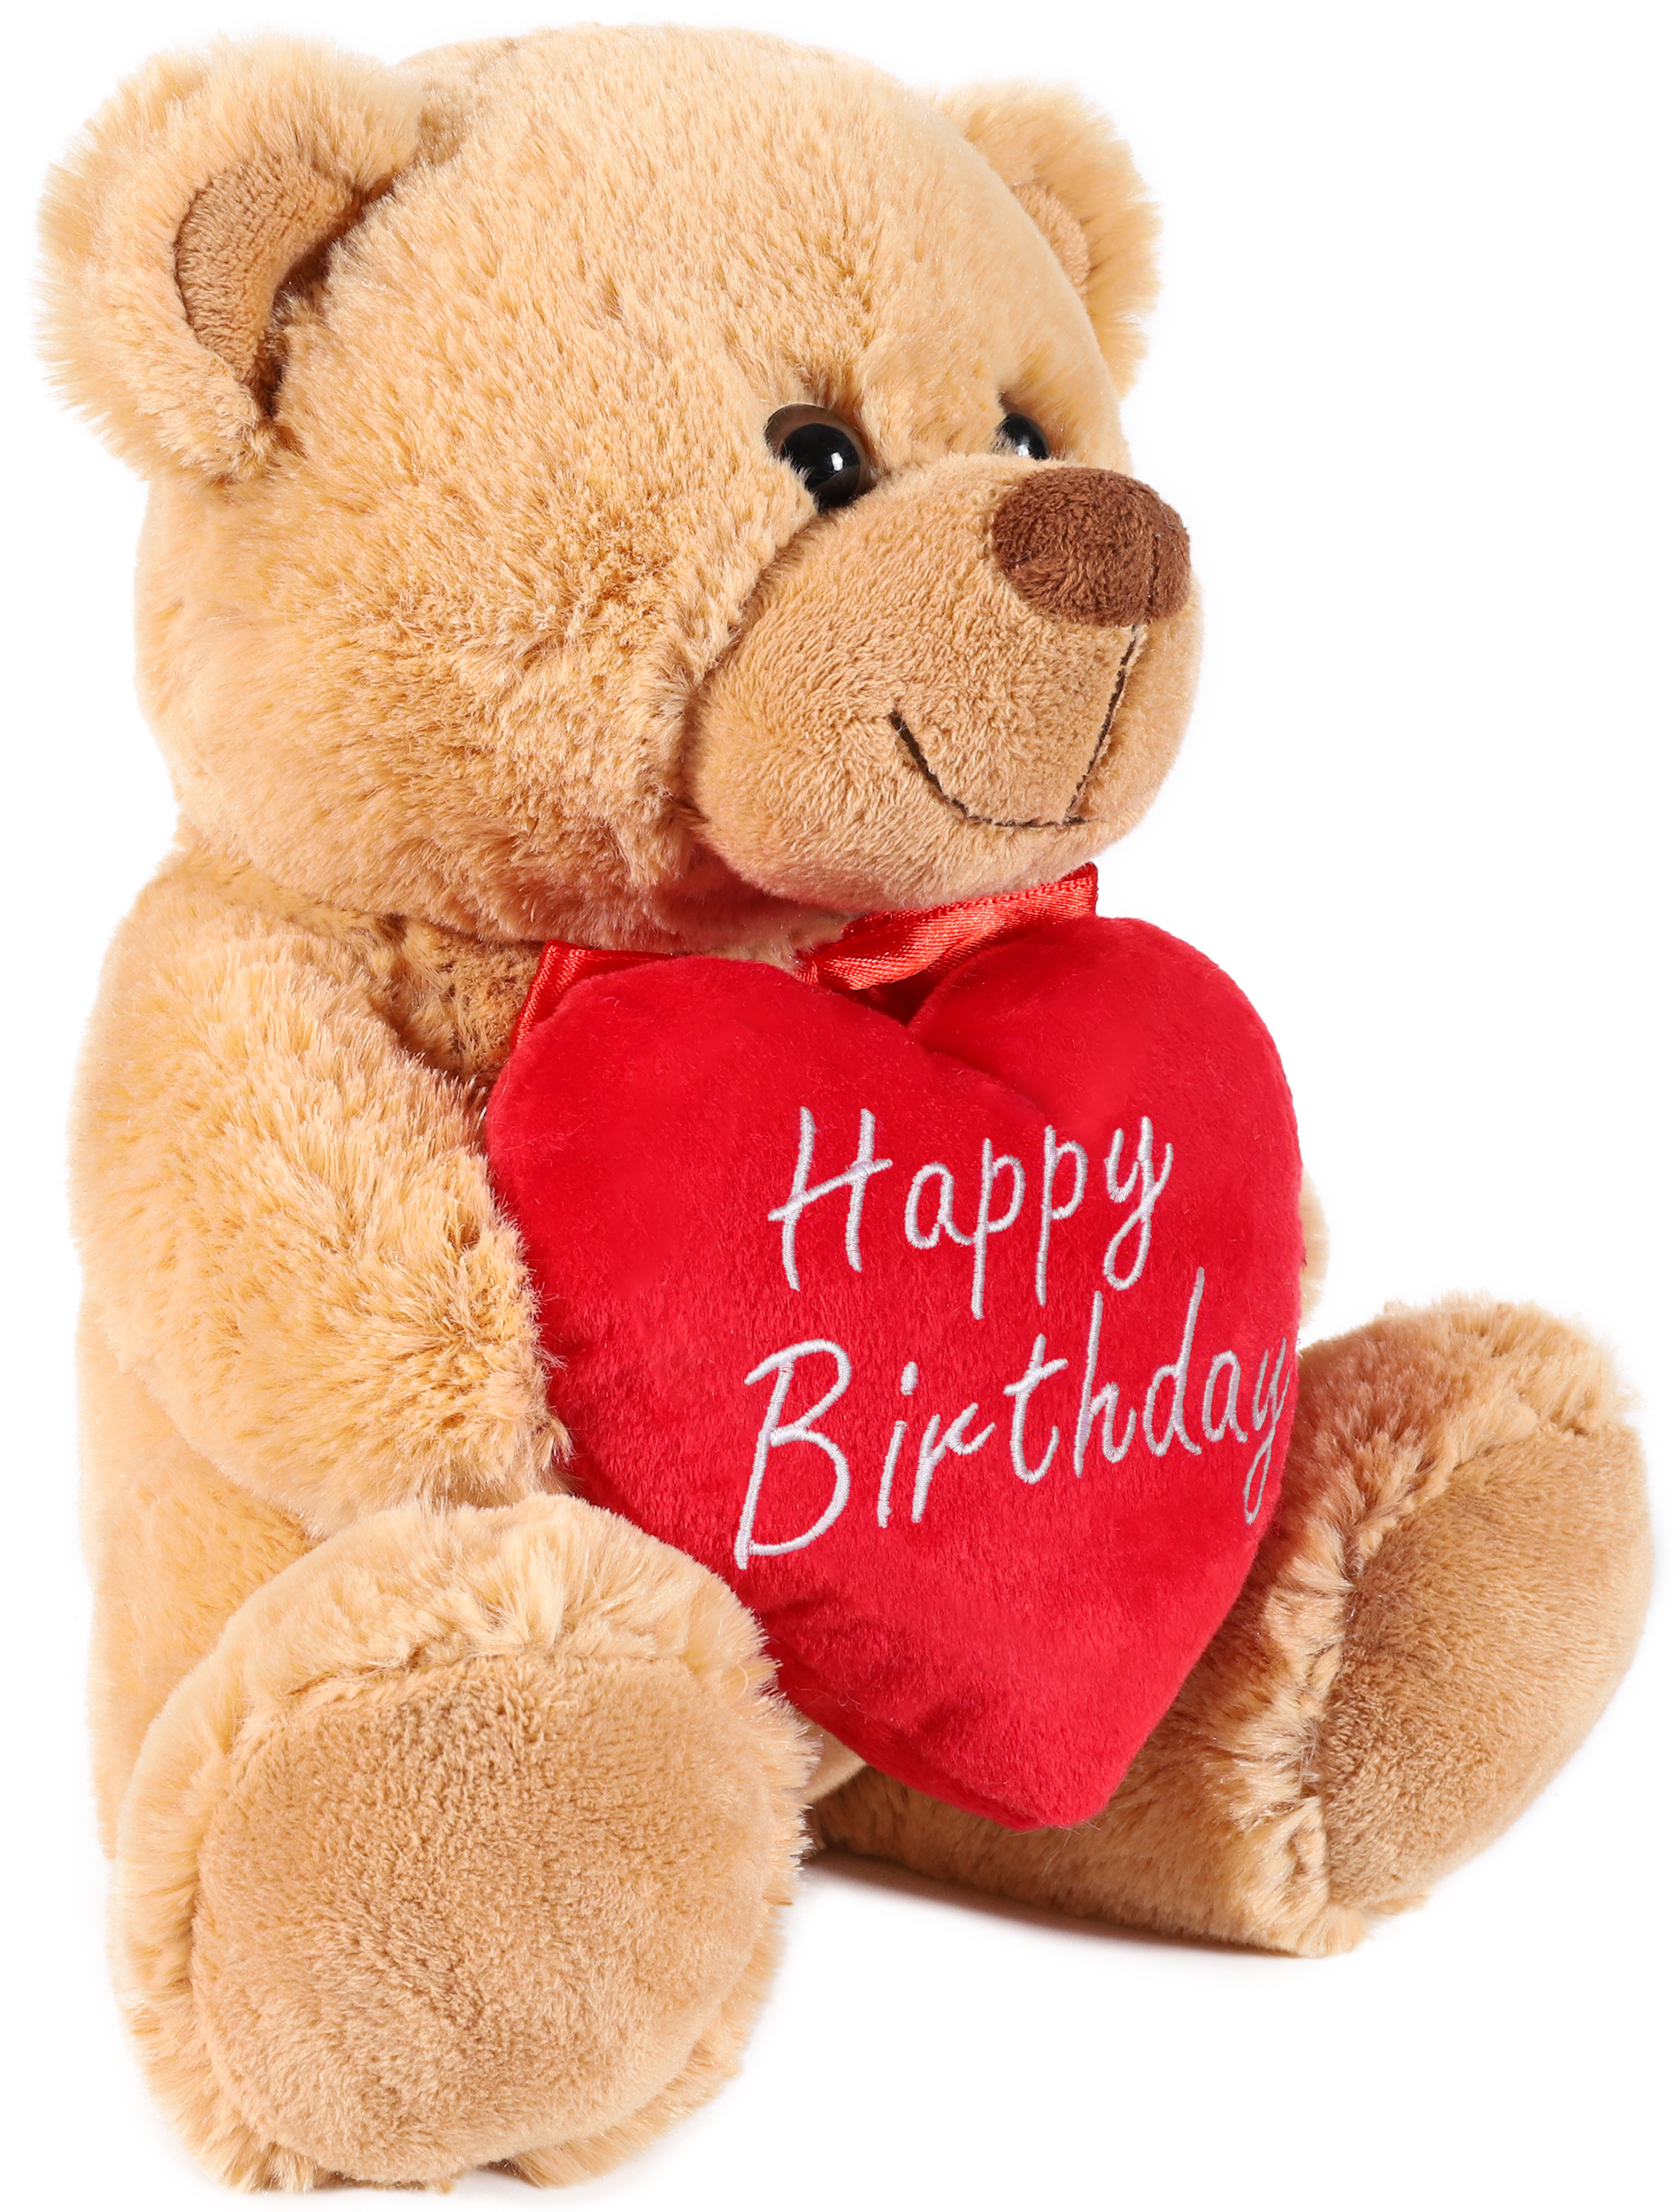 NEU-Happy Birthday Sydney-Teddybär-süß und kuschelig-Geschenk 